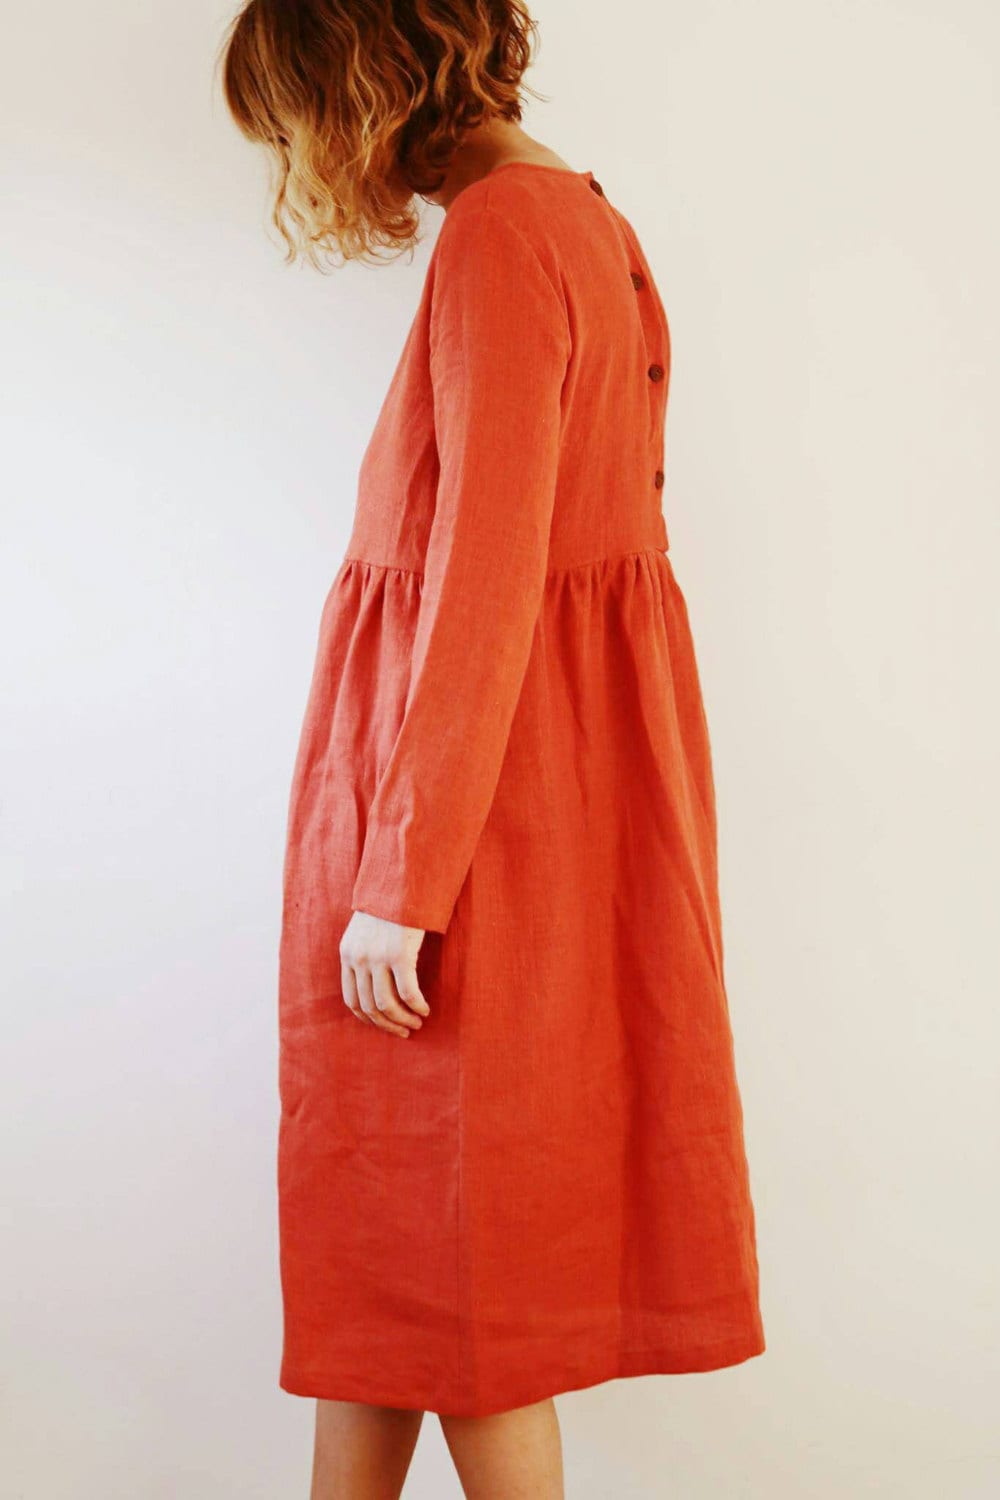 Linen Dress Burnt Orange Linen Dress Long Sleeved Dress - Etsy UK